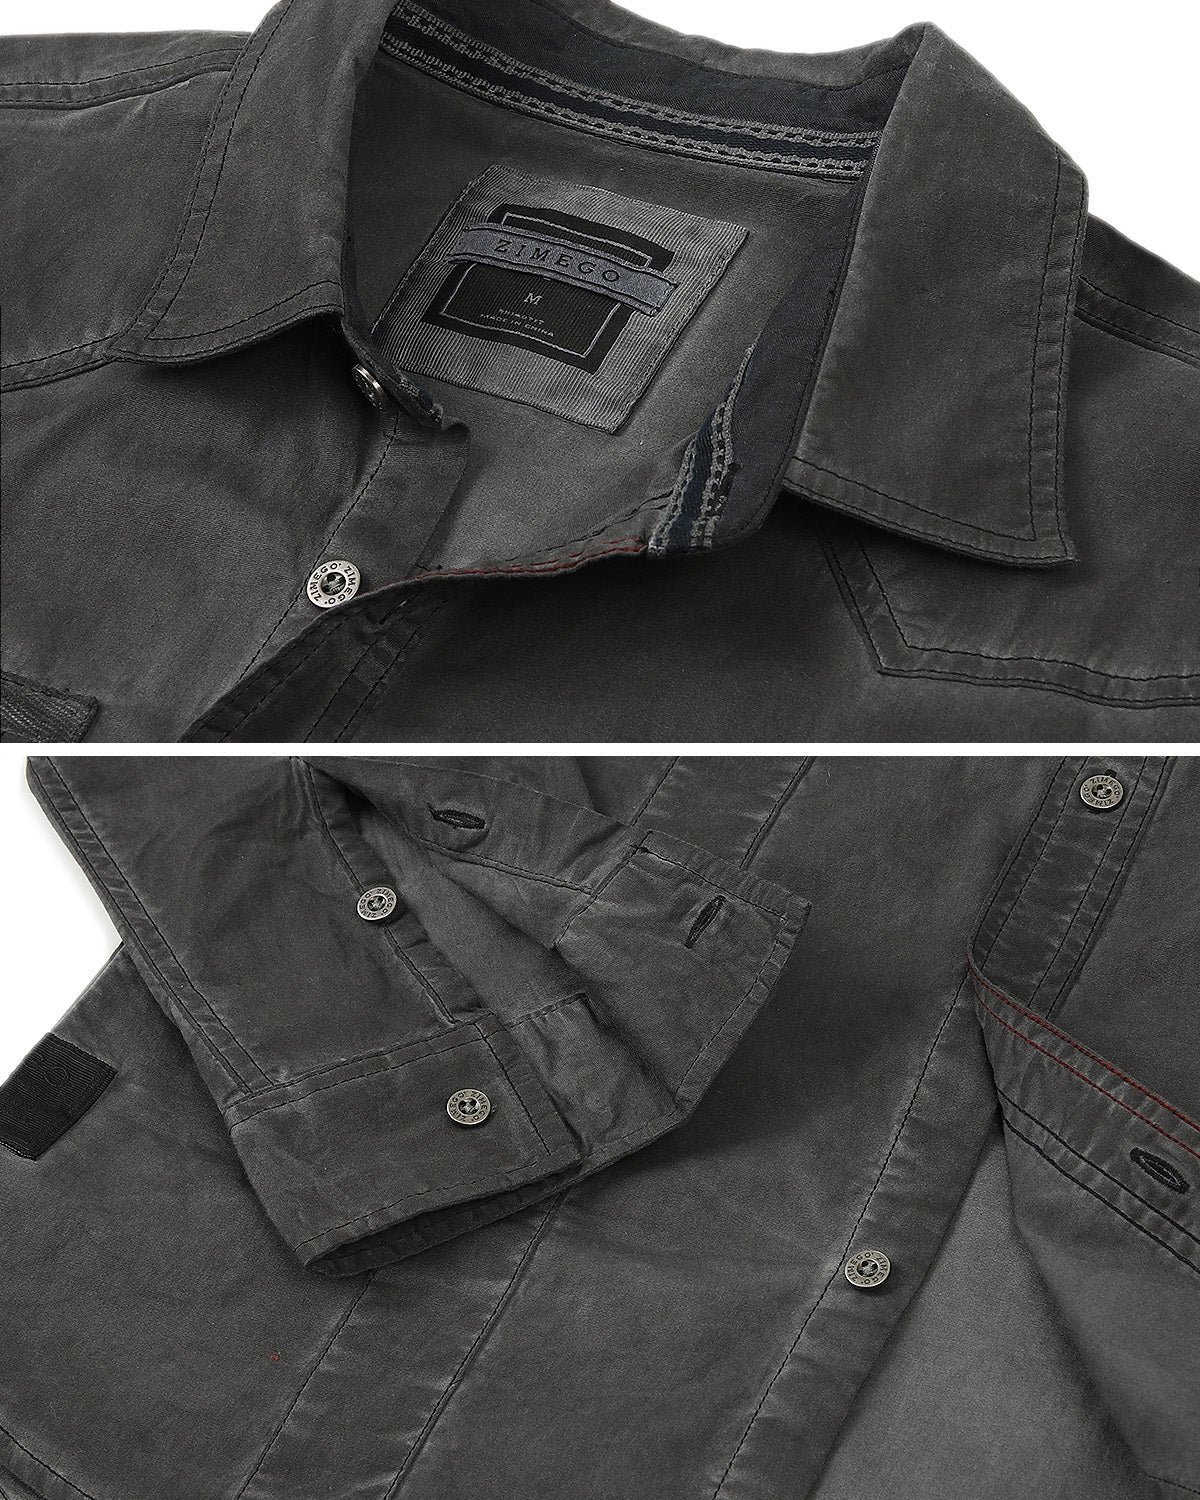 Men's Stretch Flex Slim Color Washed Vintage Rugged Button Shirt Black